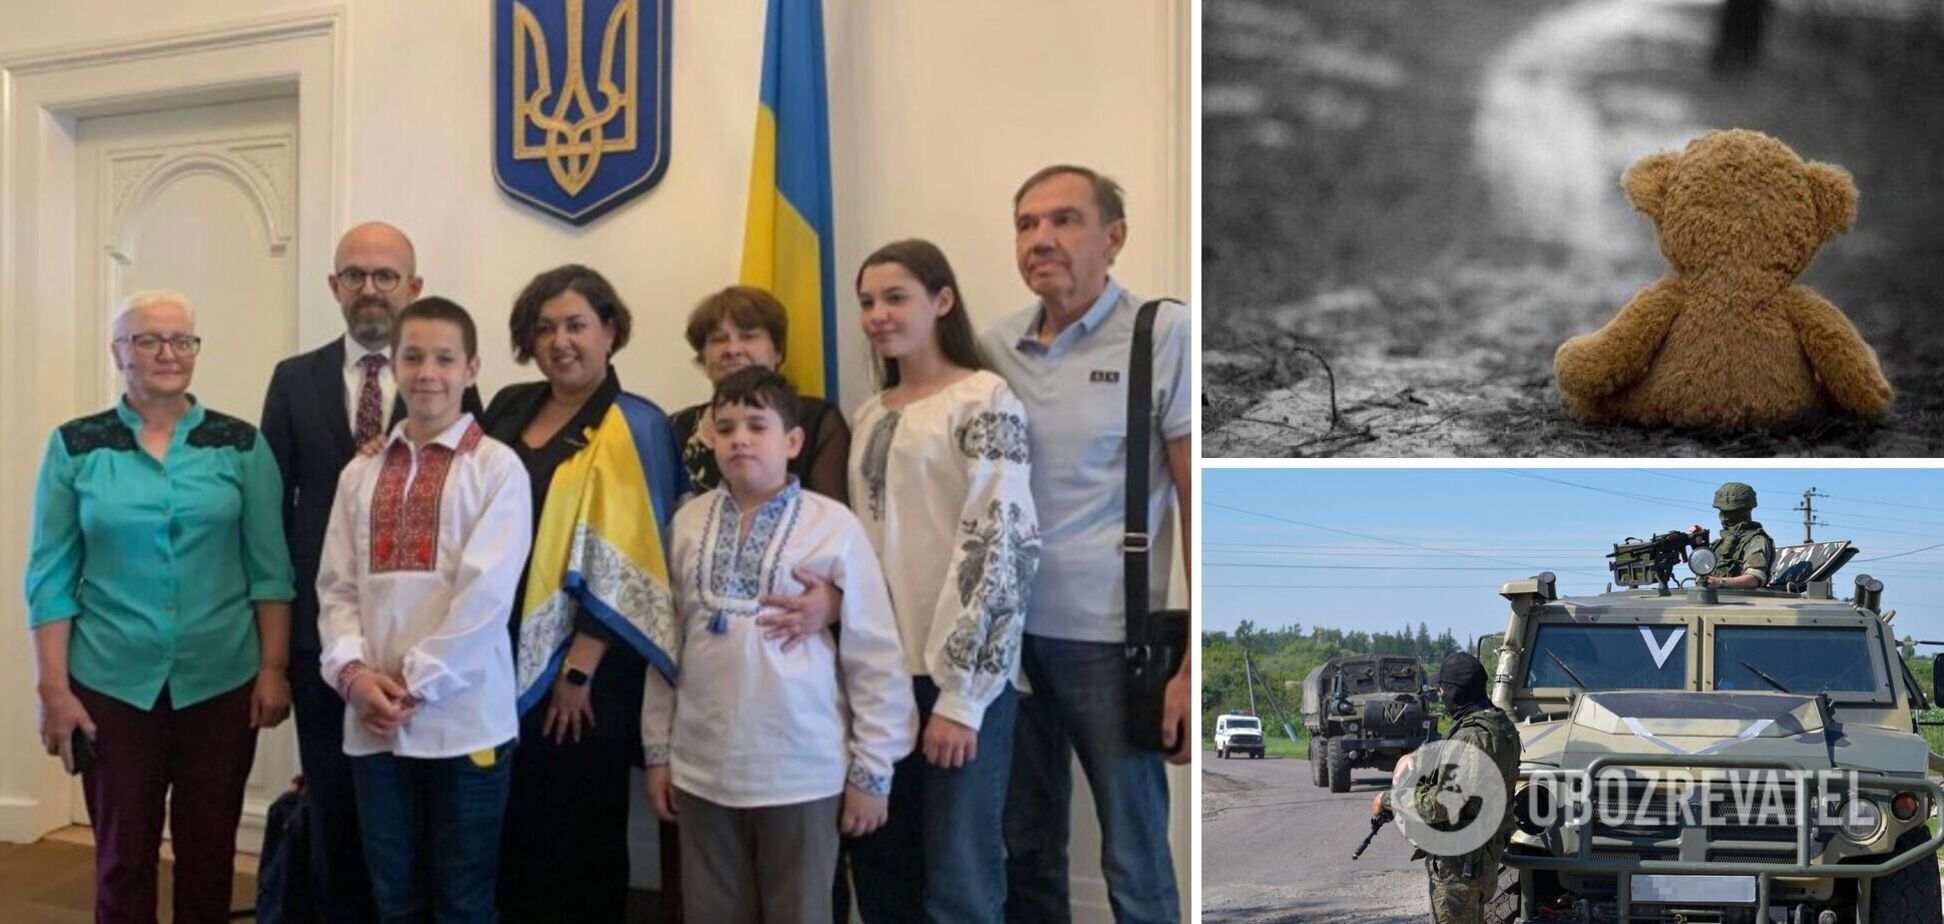 Шесть детей, вернувшихся в Украину из российской депортации, рассказали свои истории в Гааге. Фото